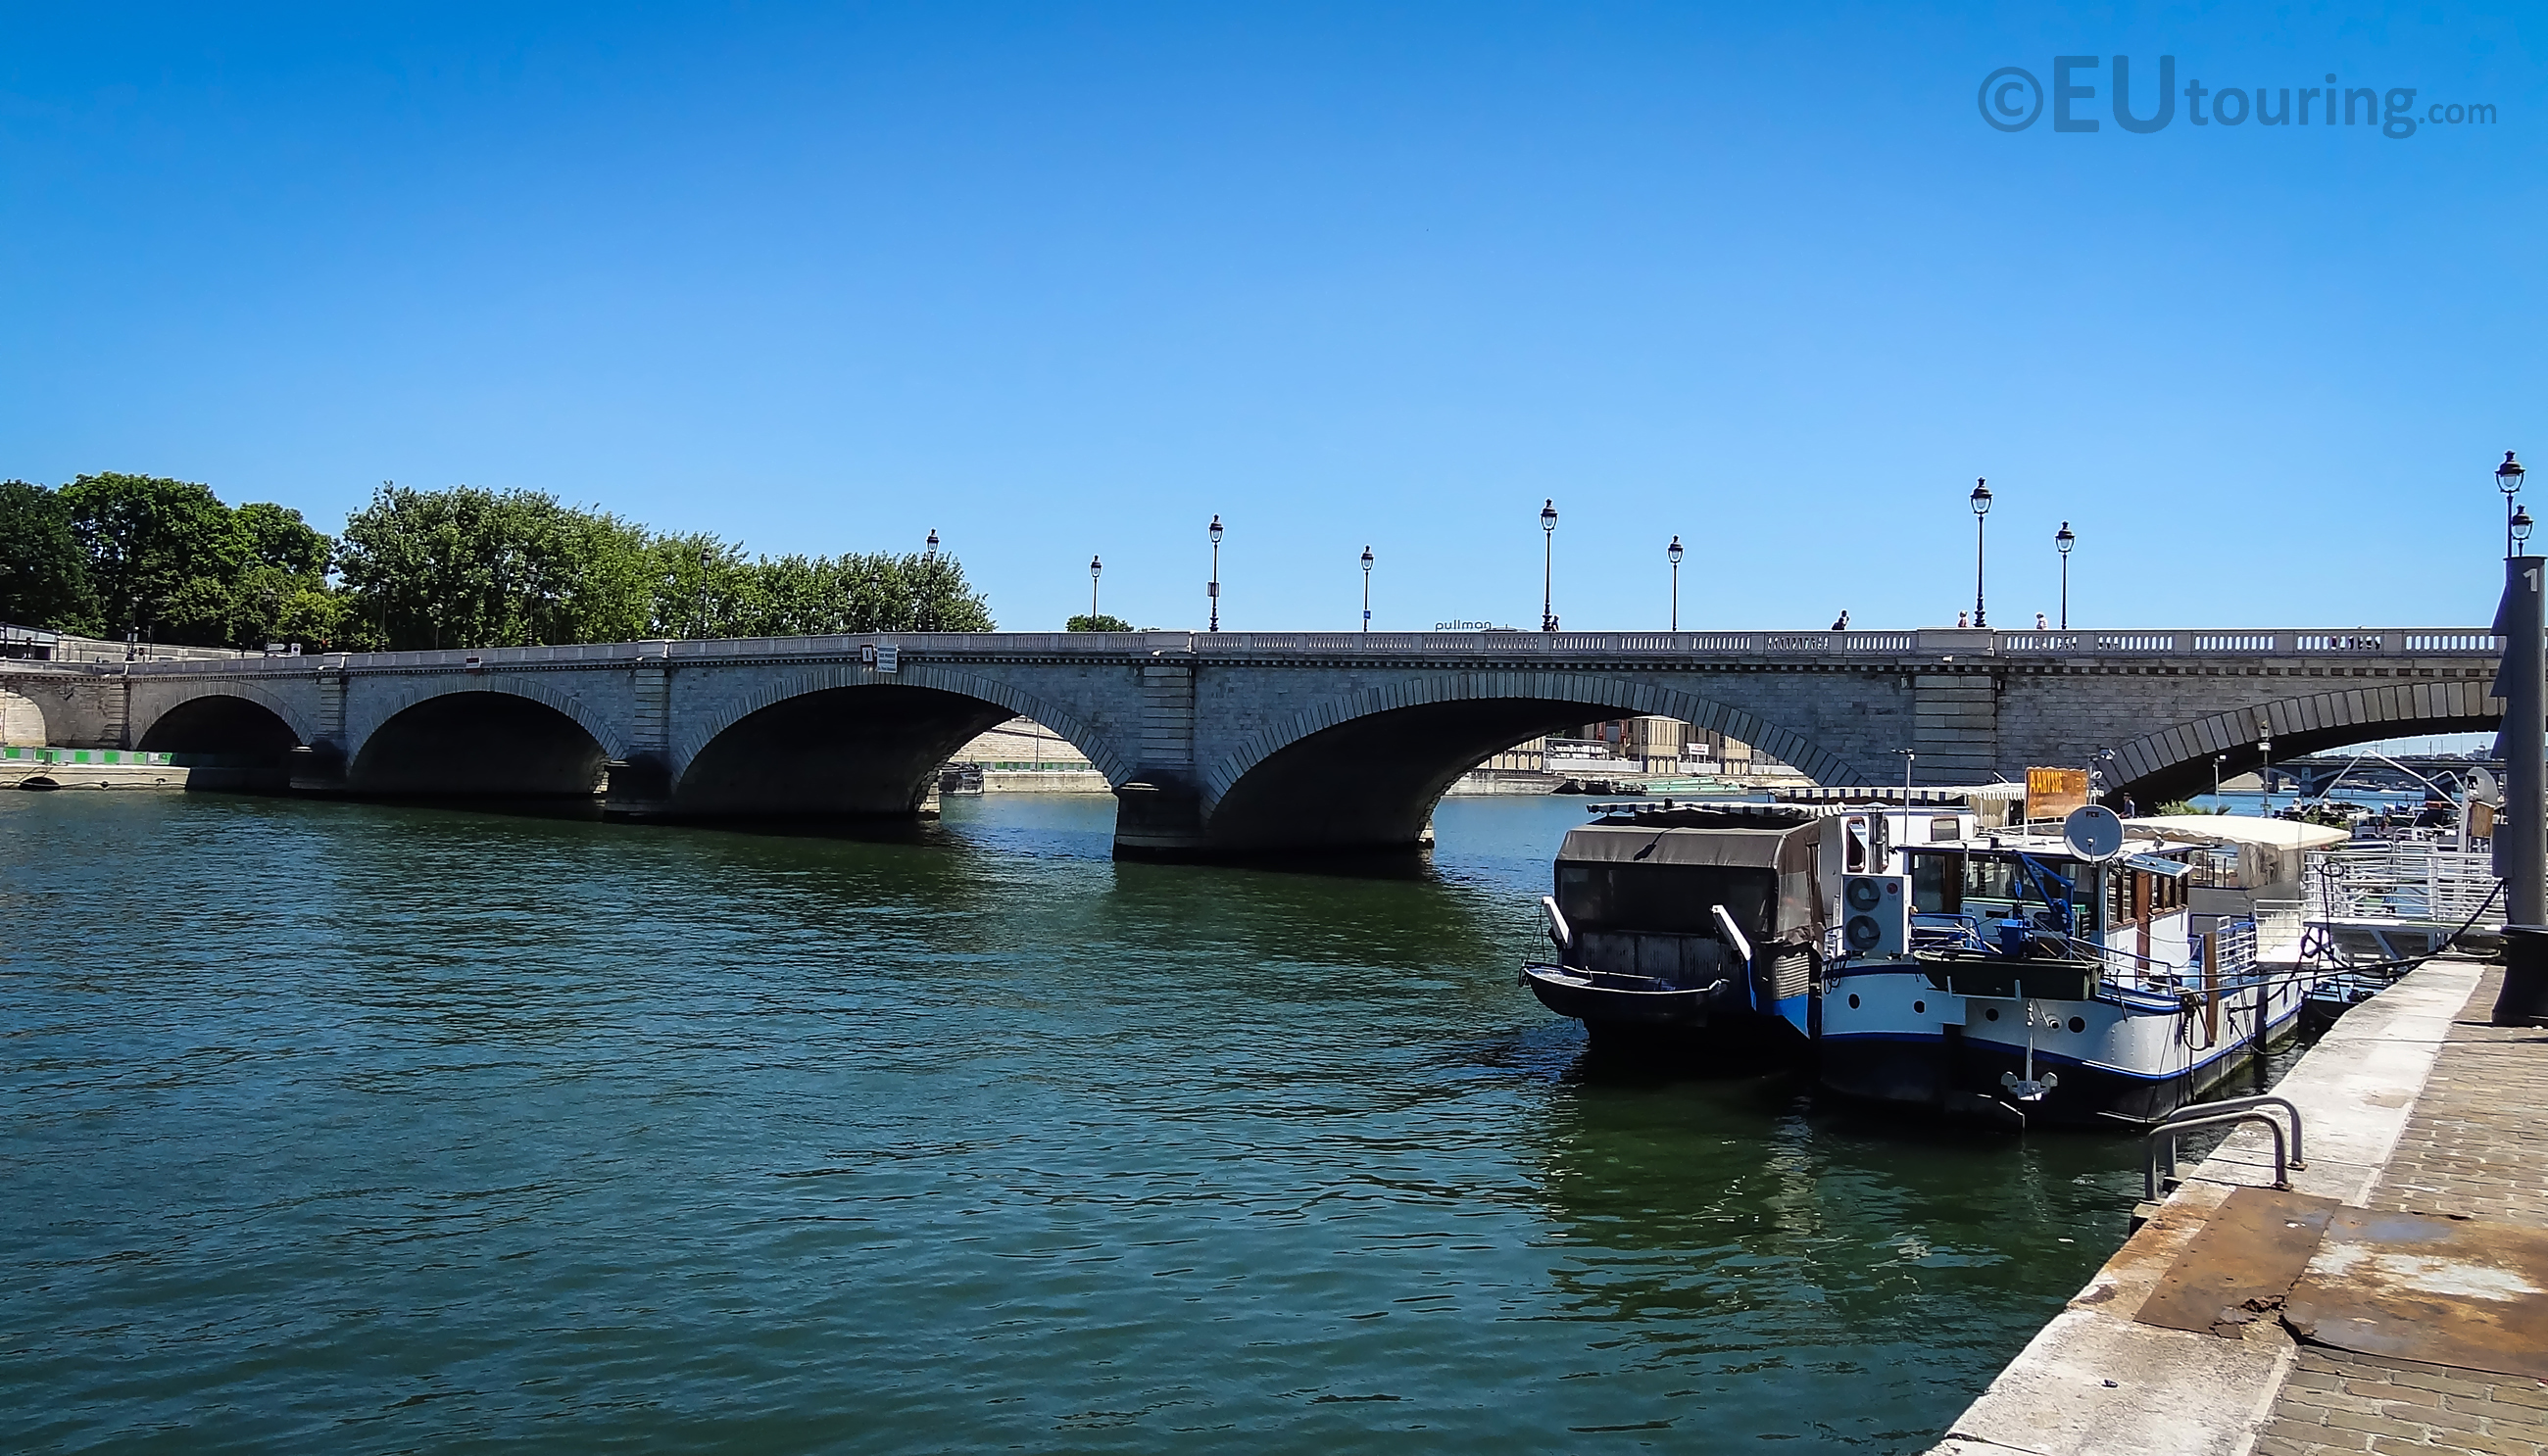 Pont de Tolbiac from Port de la Gare